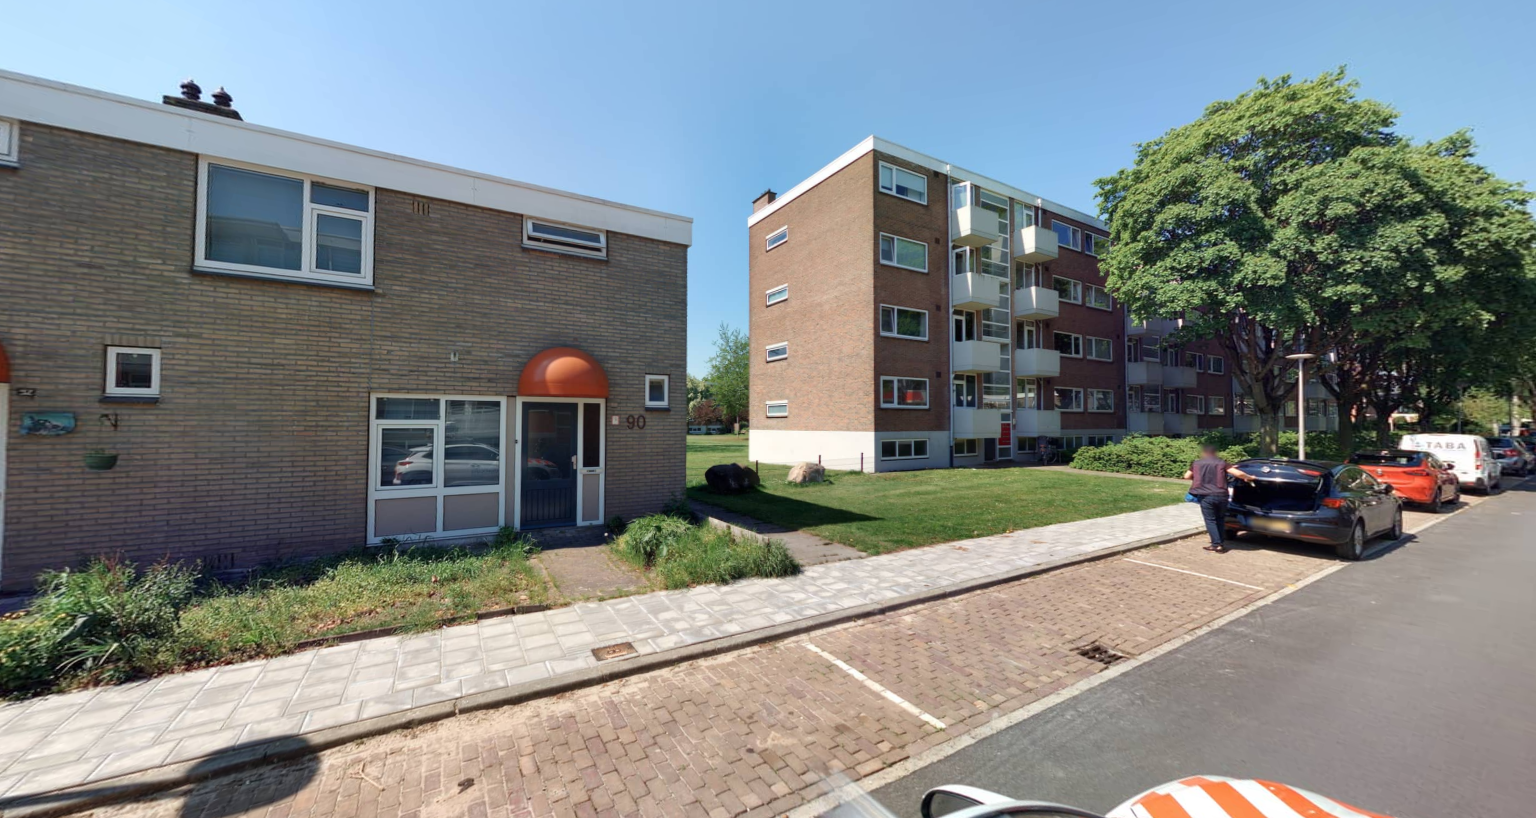 Rossinistraat 90, 7557 SR Hengelo, Nederland